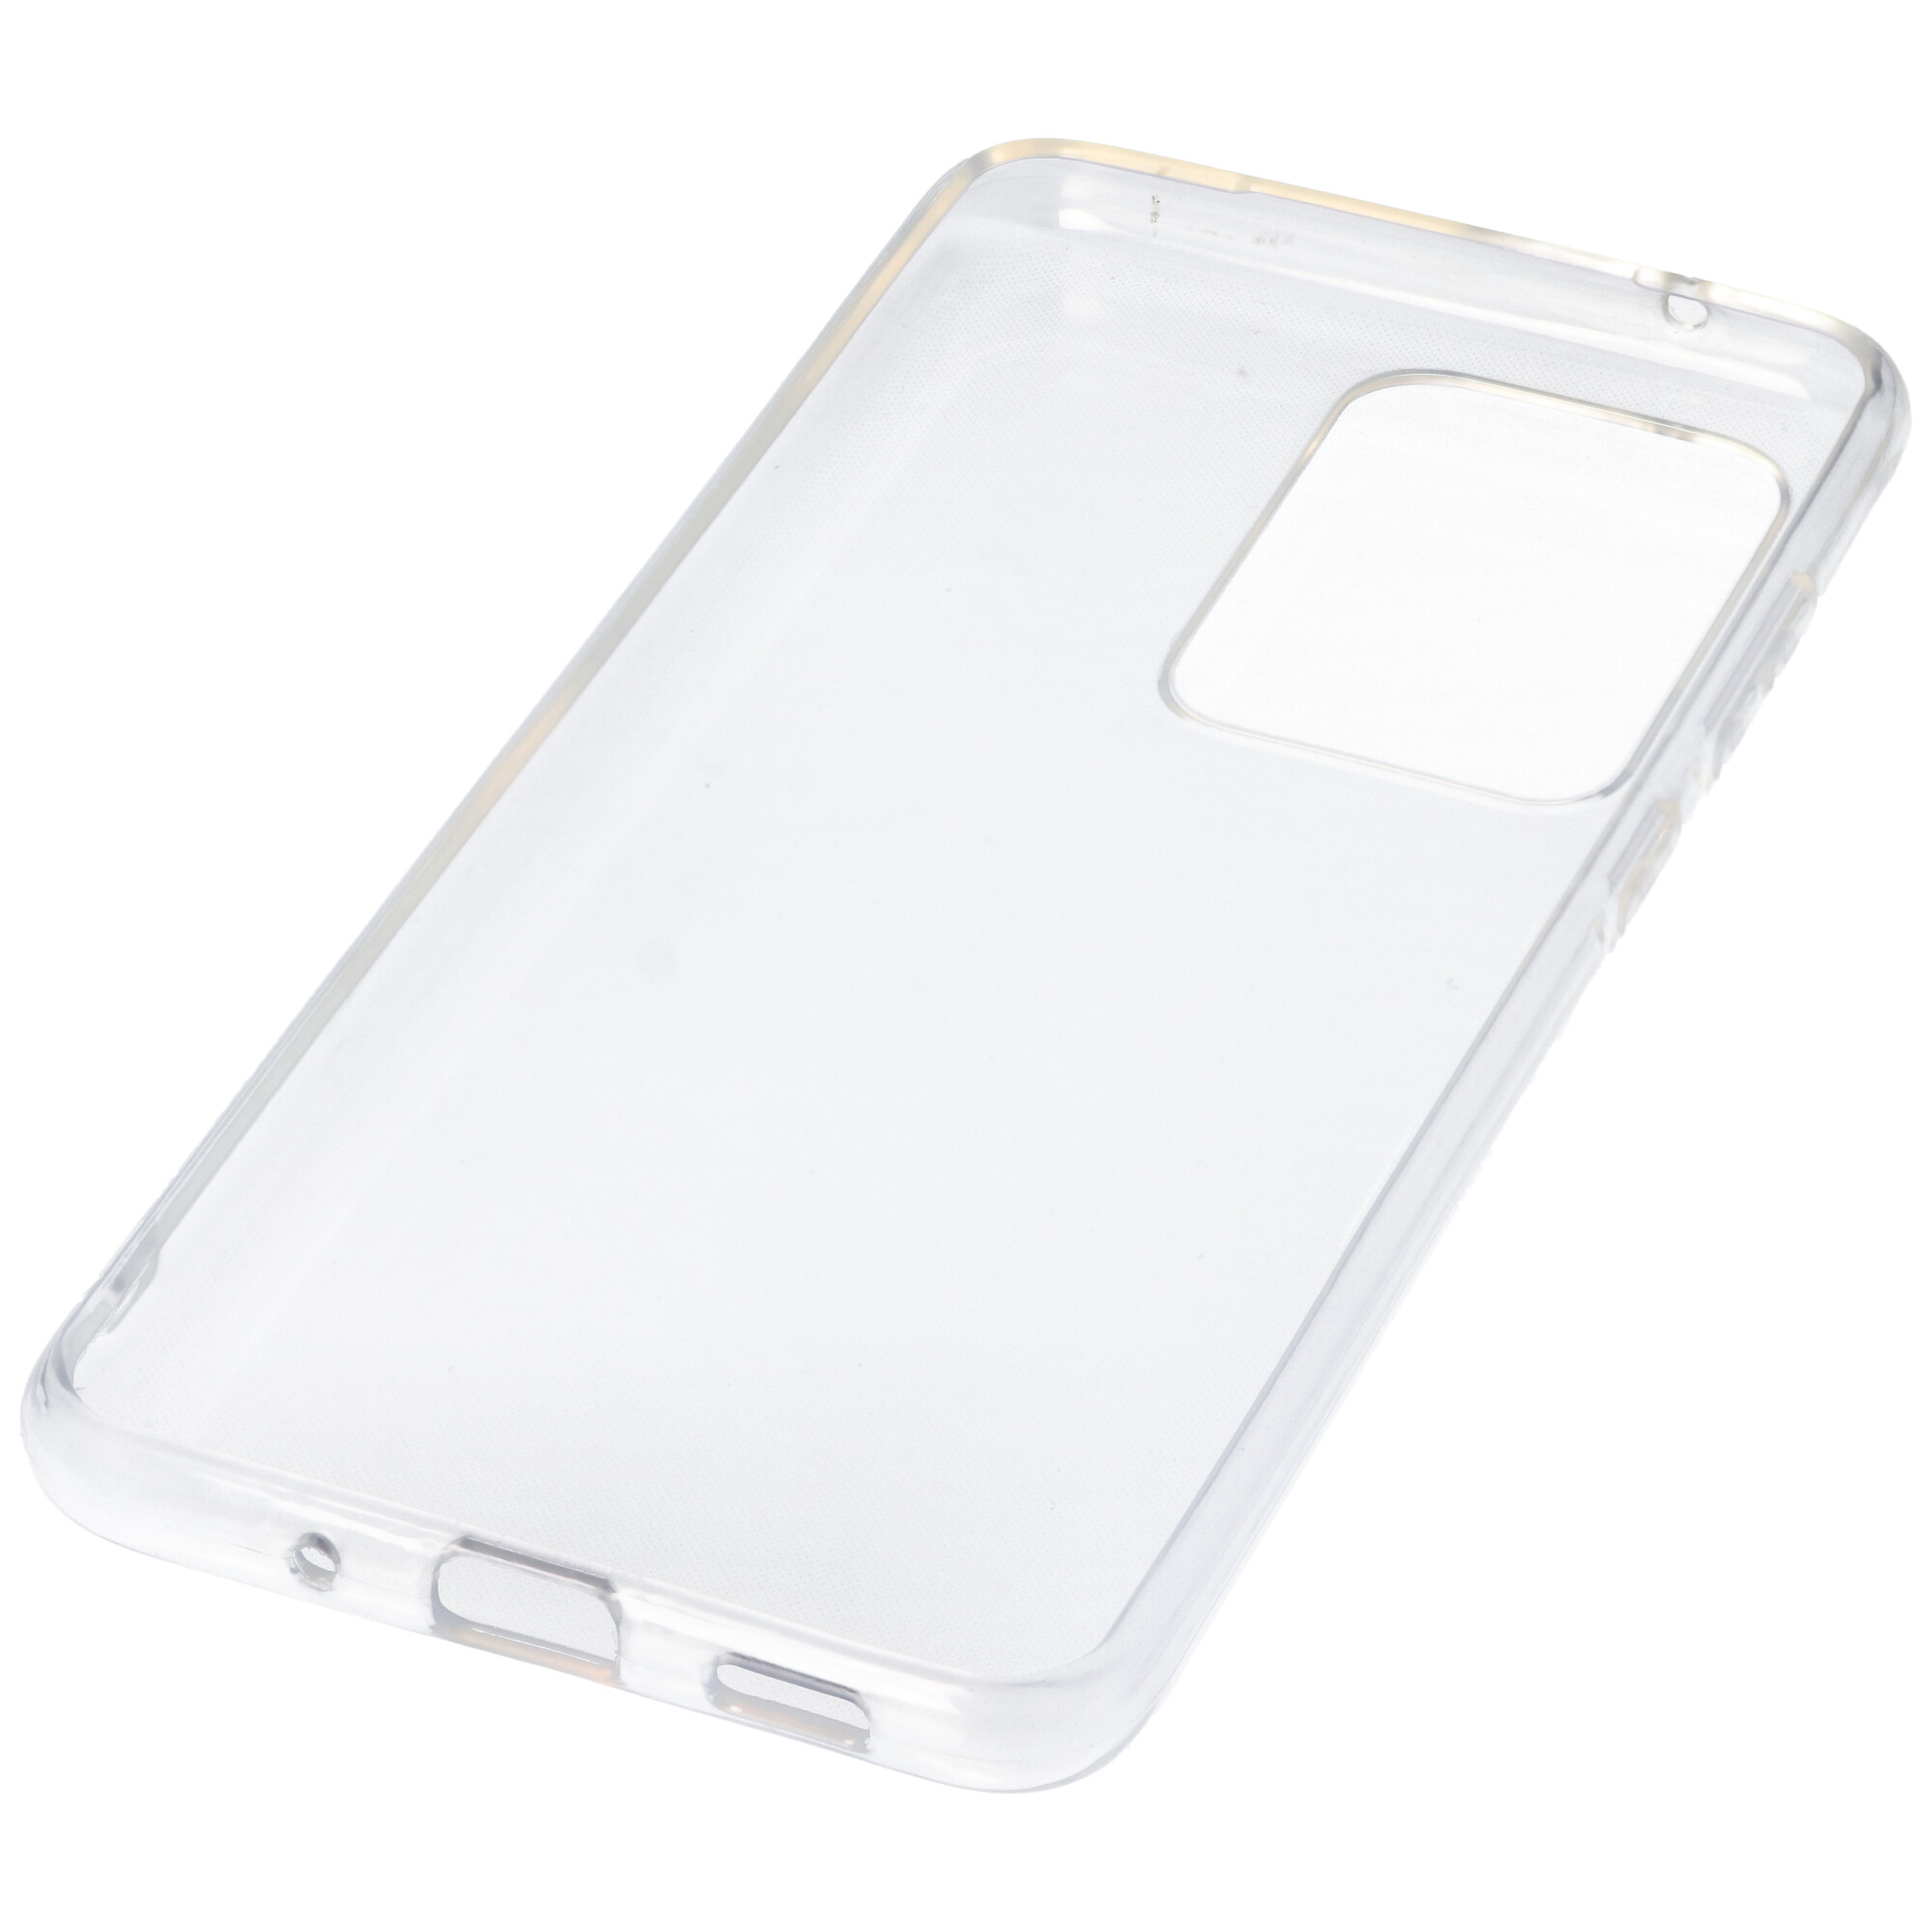 Hülle passend für Samsung Galaxy S20 Ultra - transparente Schutzhülle, Anti-Gelb Luftkissen Fallschutz Silikon Handyhülle robustes TPU Case